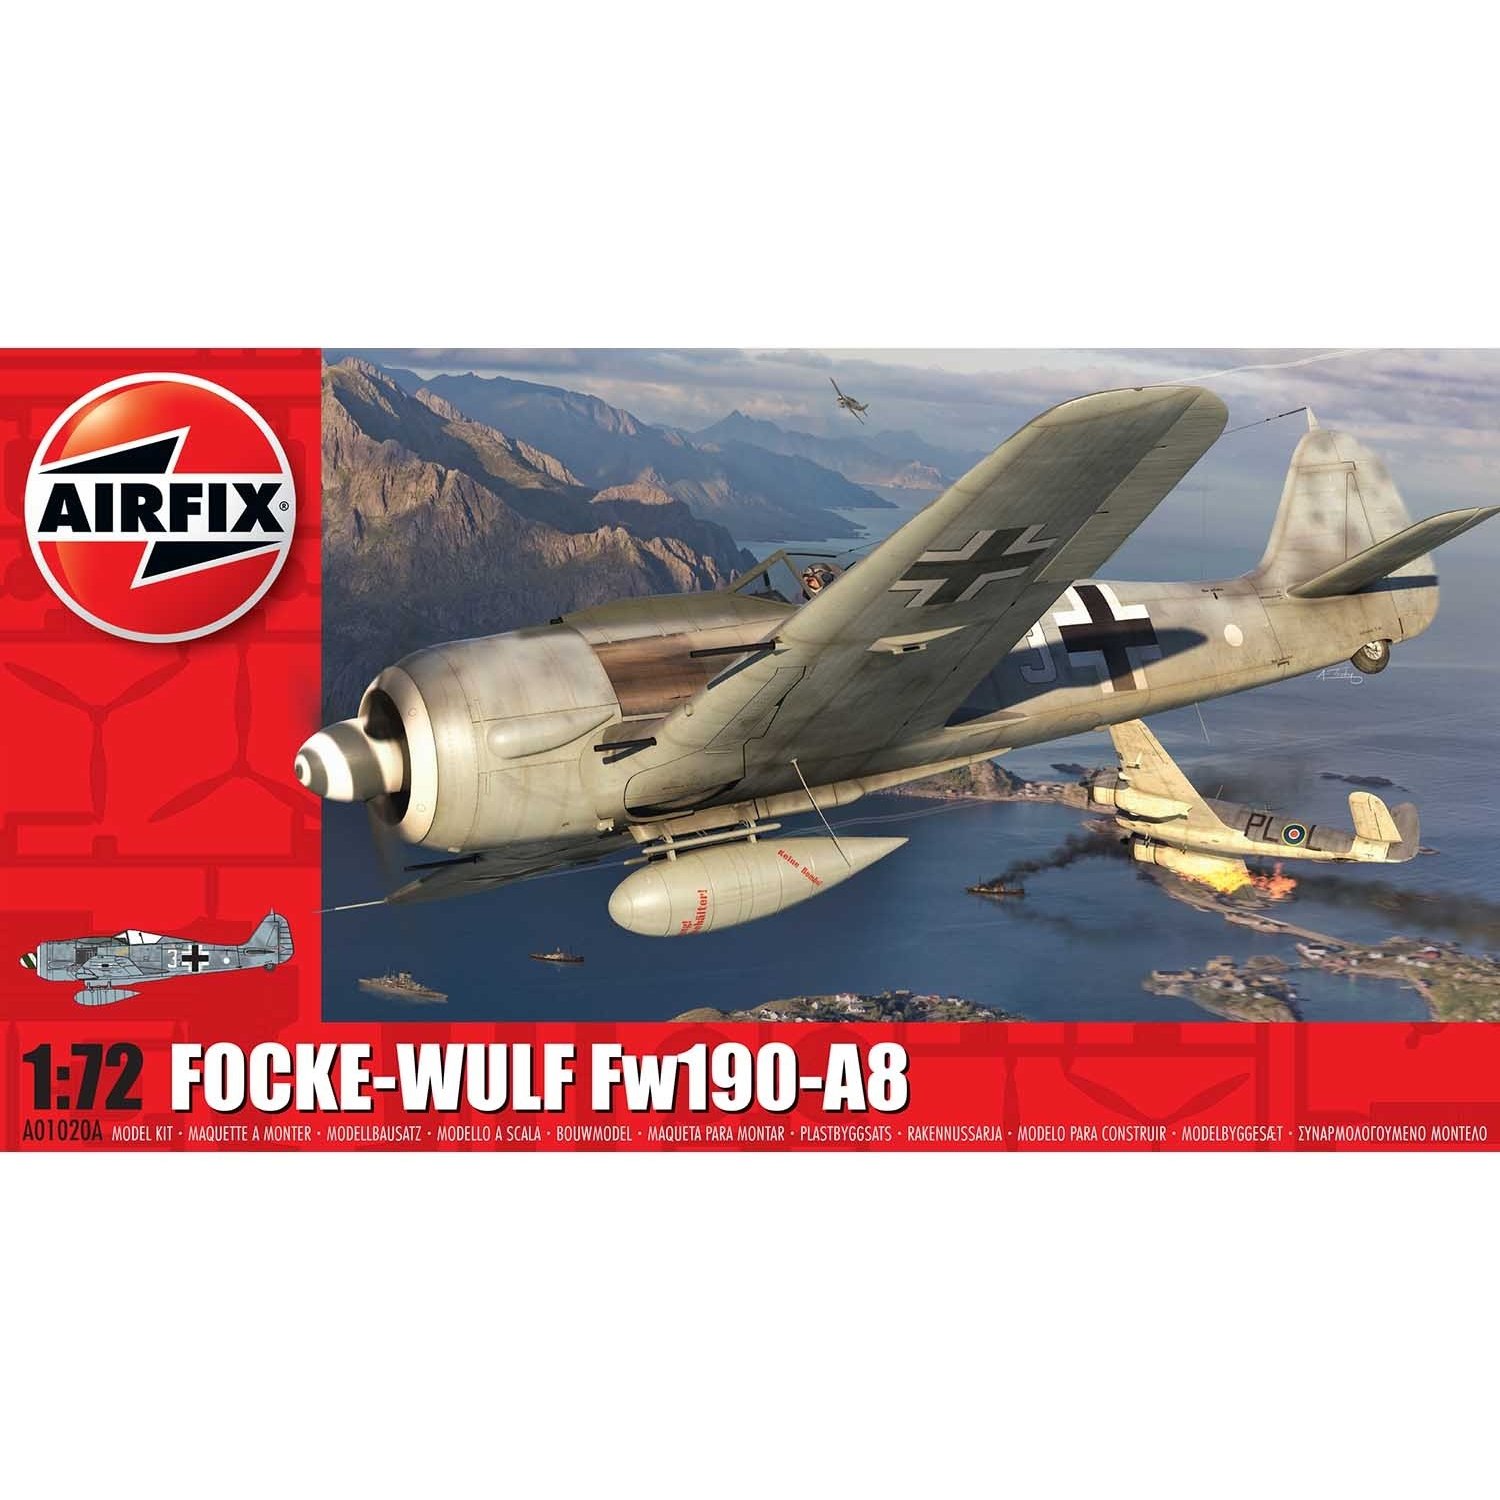 Airfix A1020A focke-wulf fw190-a8 1:72